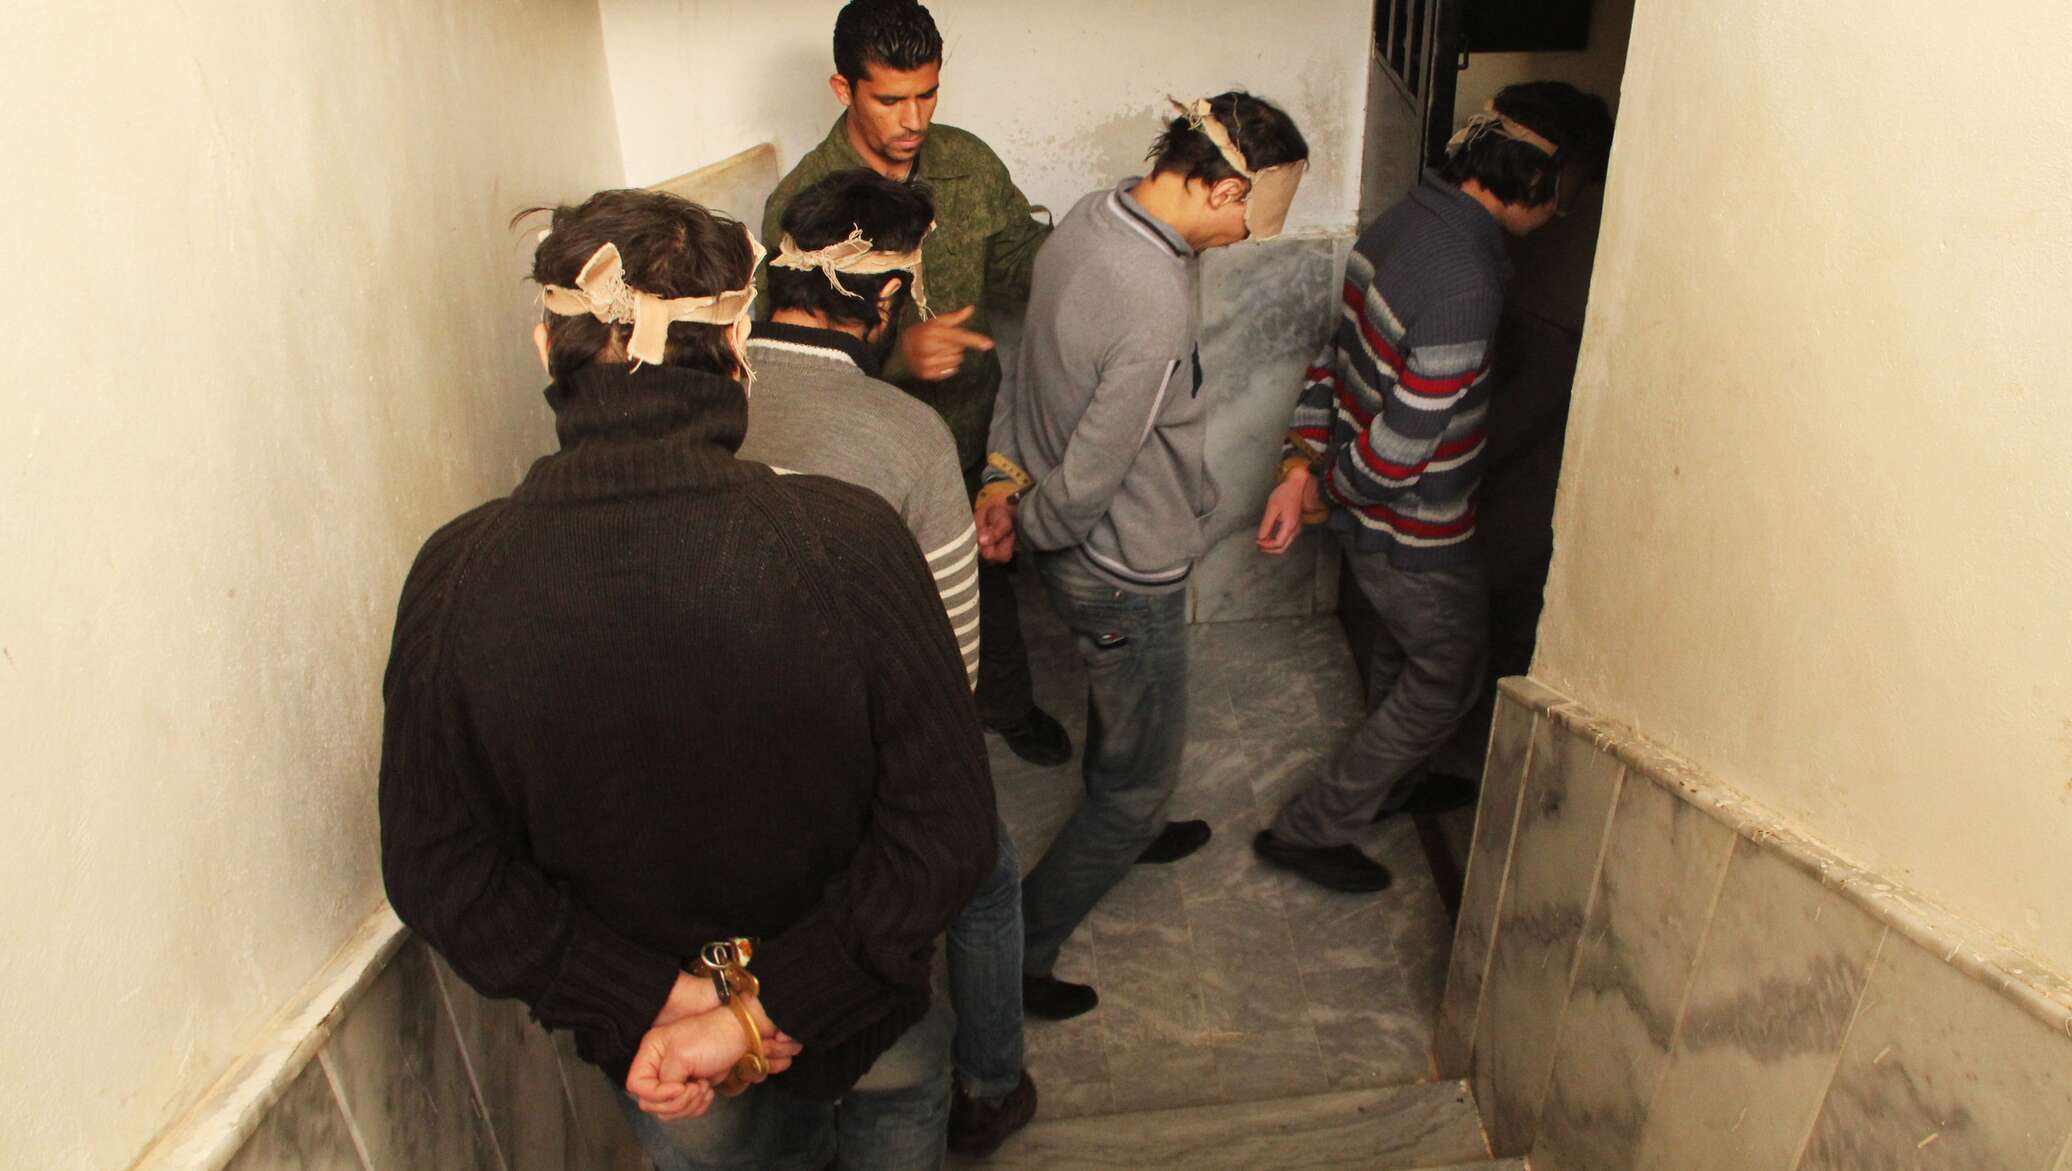 Таджики уезжают из москвы после теракта